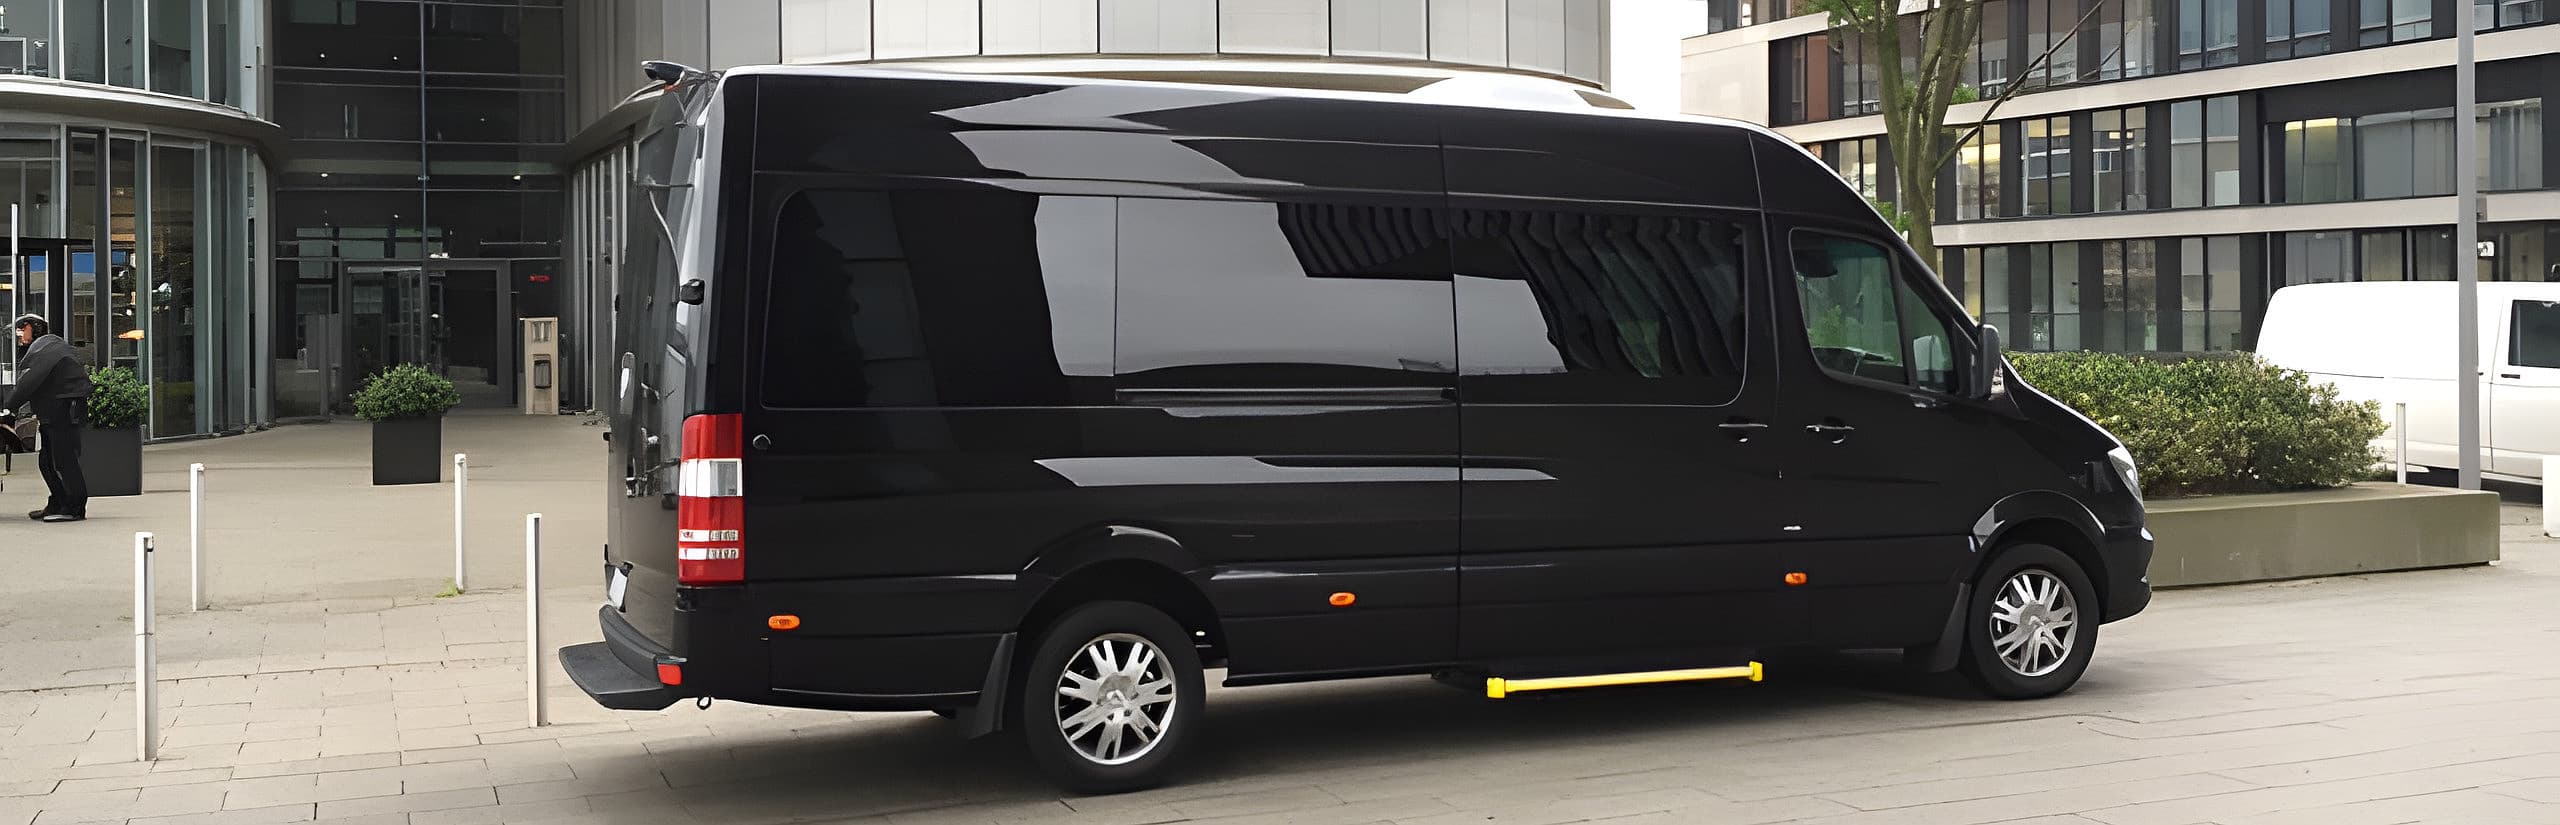 VIP minibus, luxury Sprinter, luxury minibus hire in Dusseldorf